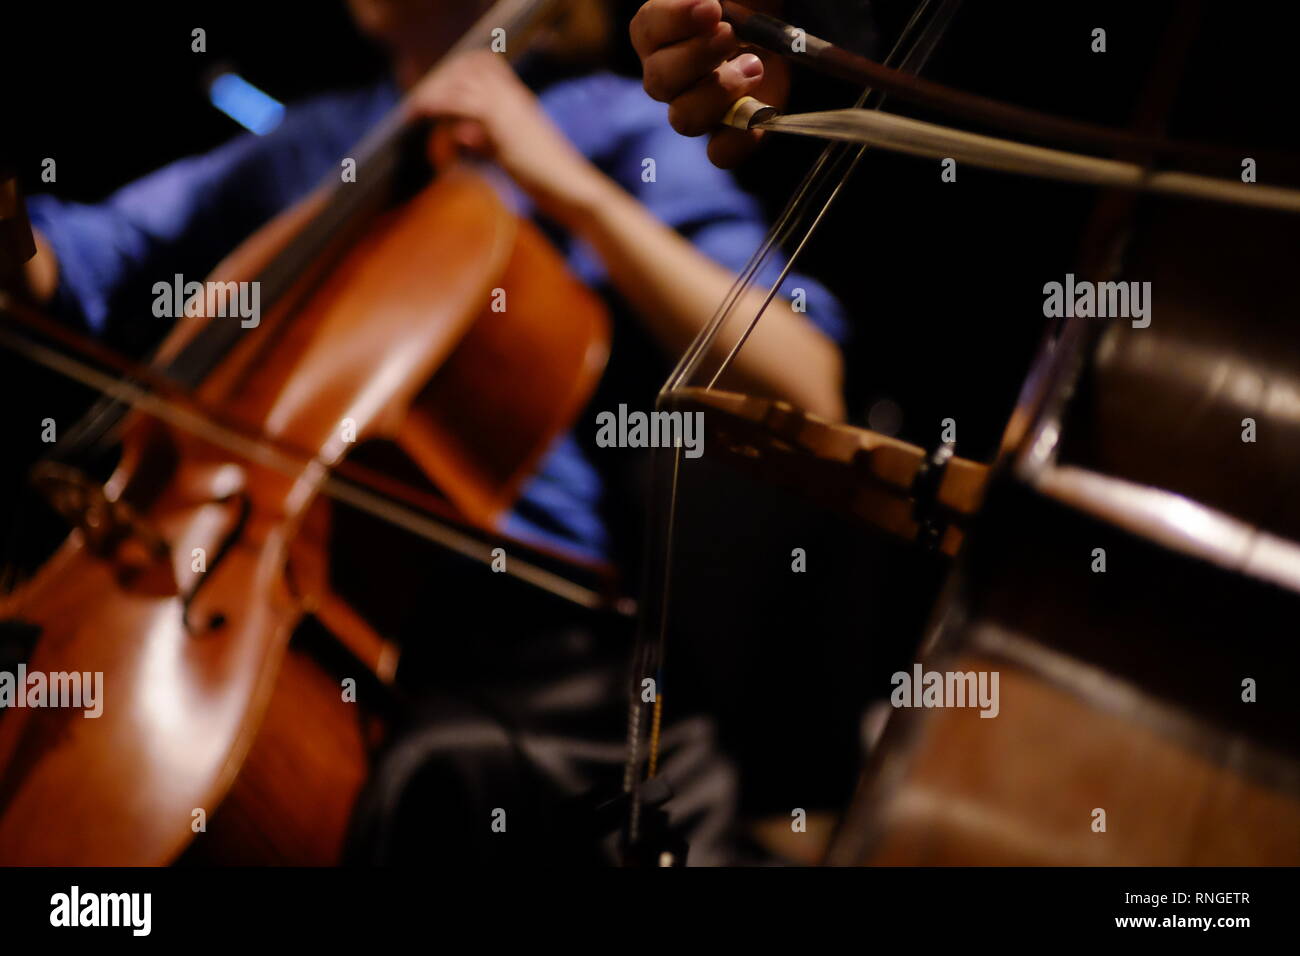 Kontrabass und Cello neigte in Nahaufnahme in Konzert ohne Gesichter gezeigt wird Stockfoto